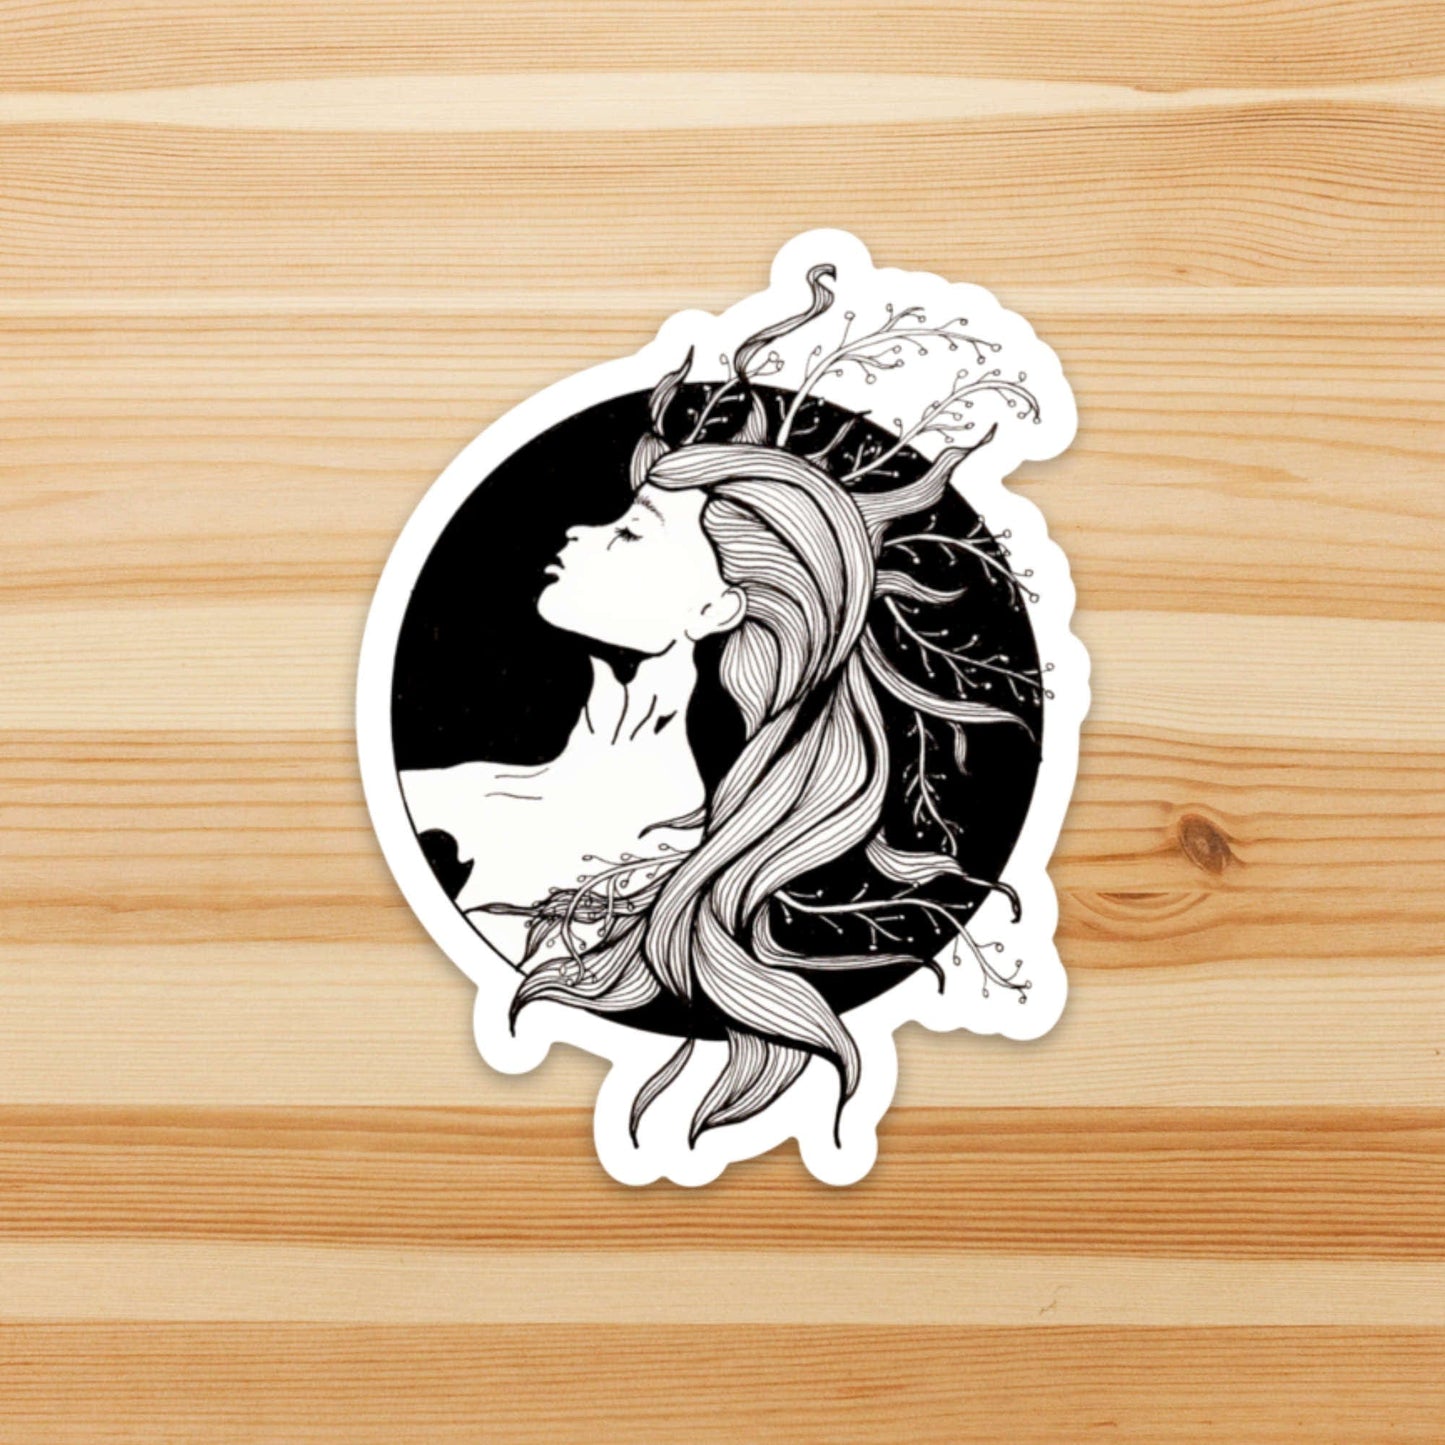 PinkPolish Design Stickers "Sea Witch" Vinyl Die Cut Sticker